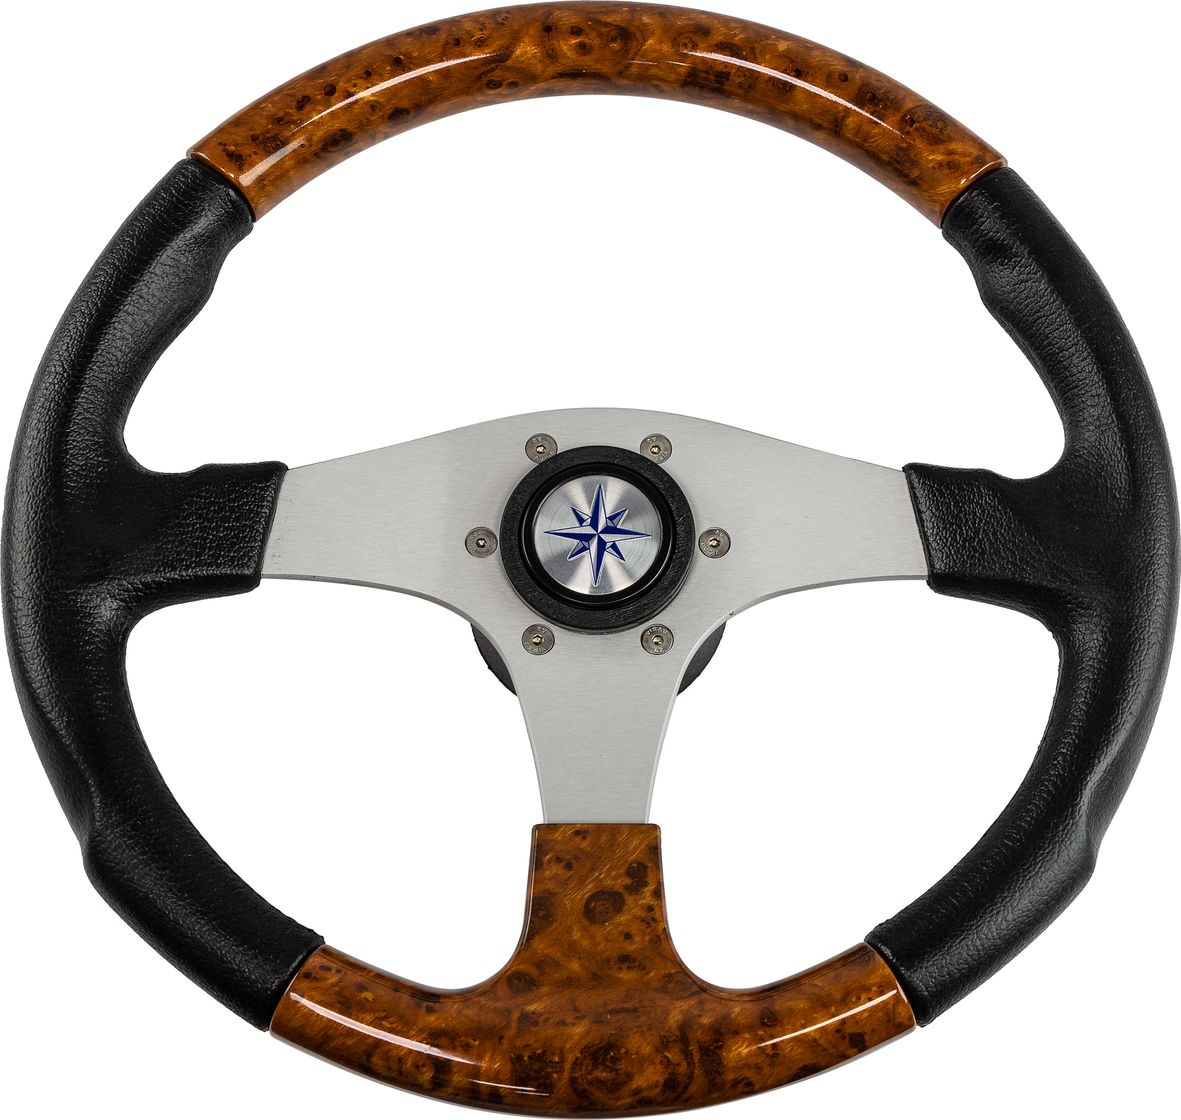 Рулевое колесо EVO MARINE 2 обод черный/коричневый, спицы серебряные д. 355 мм VN850001-45 рулевое колесо manta обод белый спицы серебряные д 355 мм vn70551 08